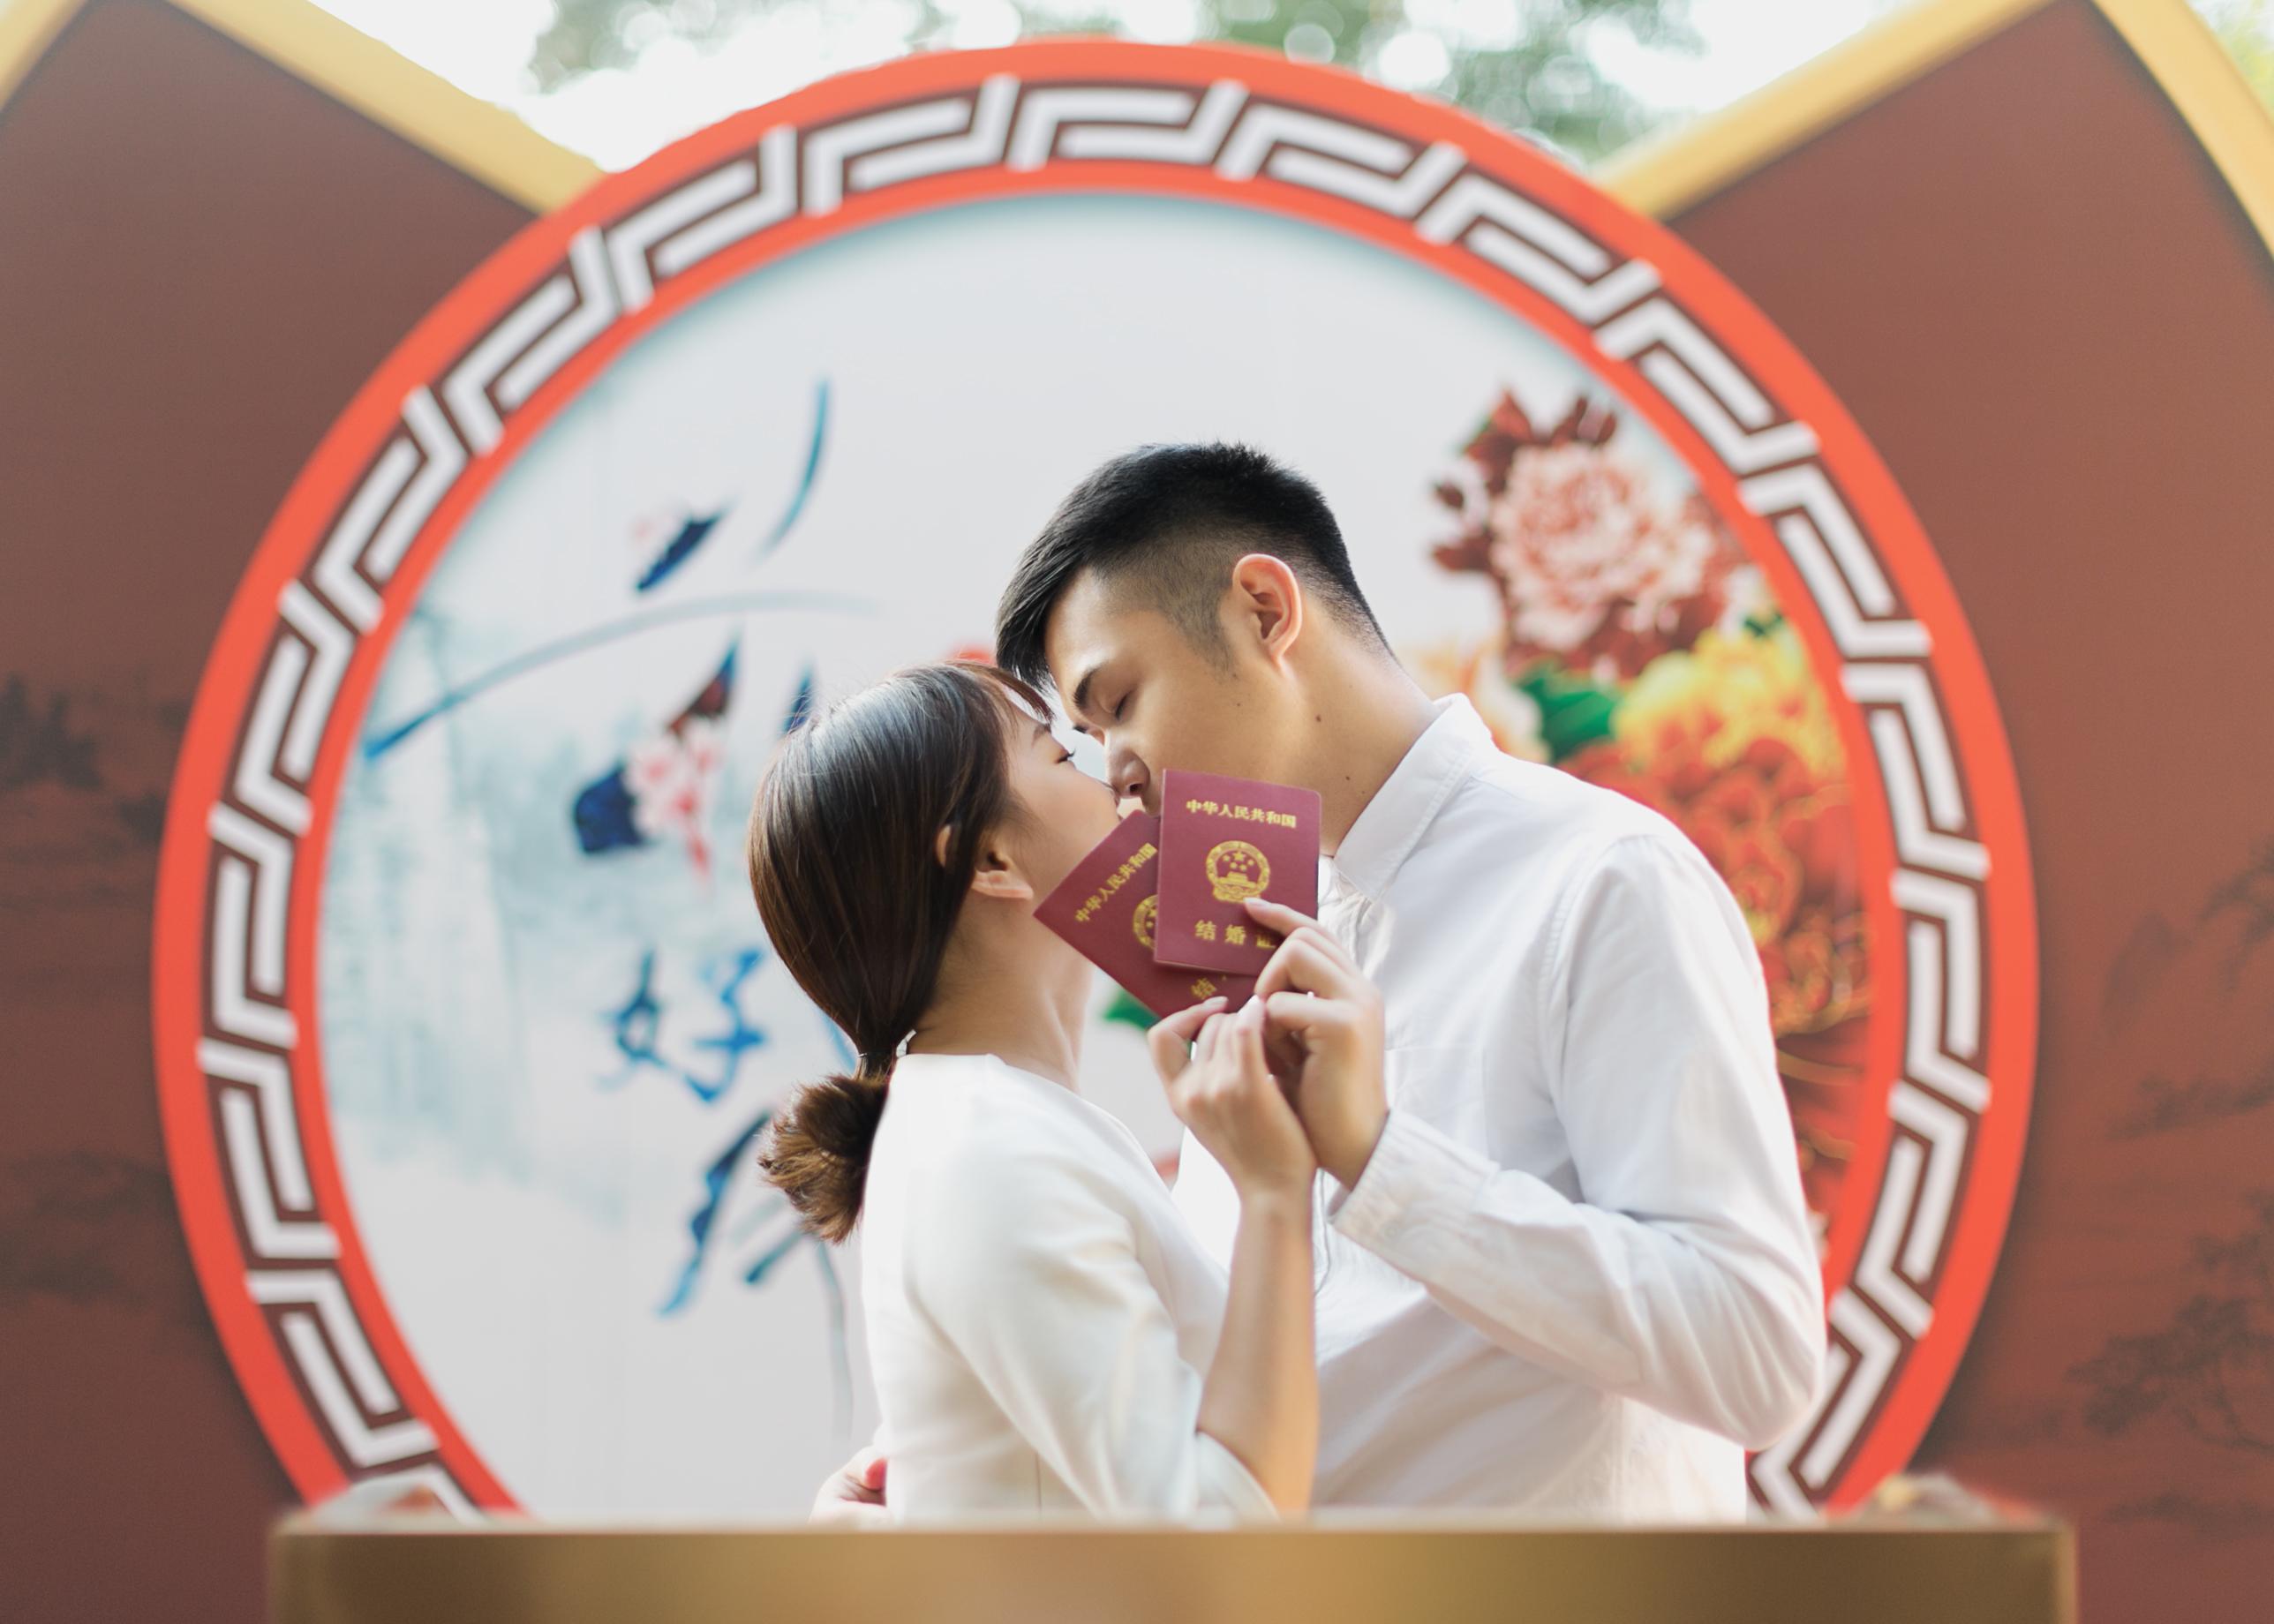 深圳最美结婚领证照攻略「为你拍摄」